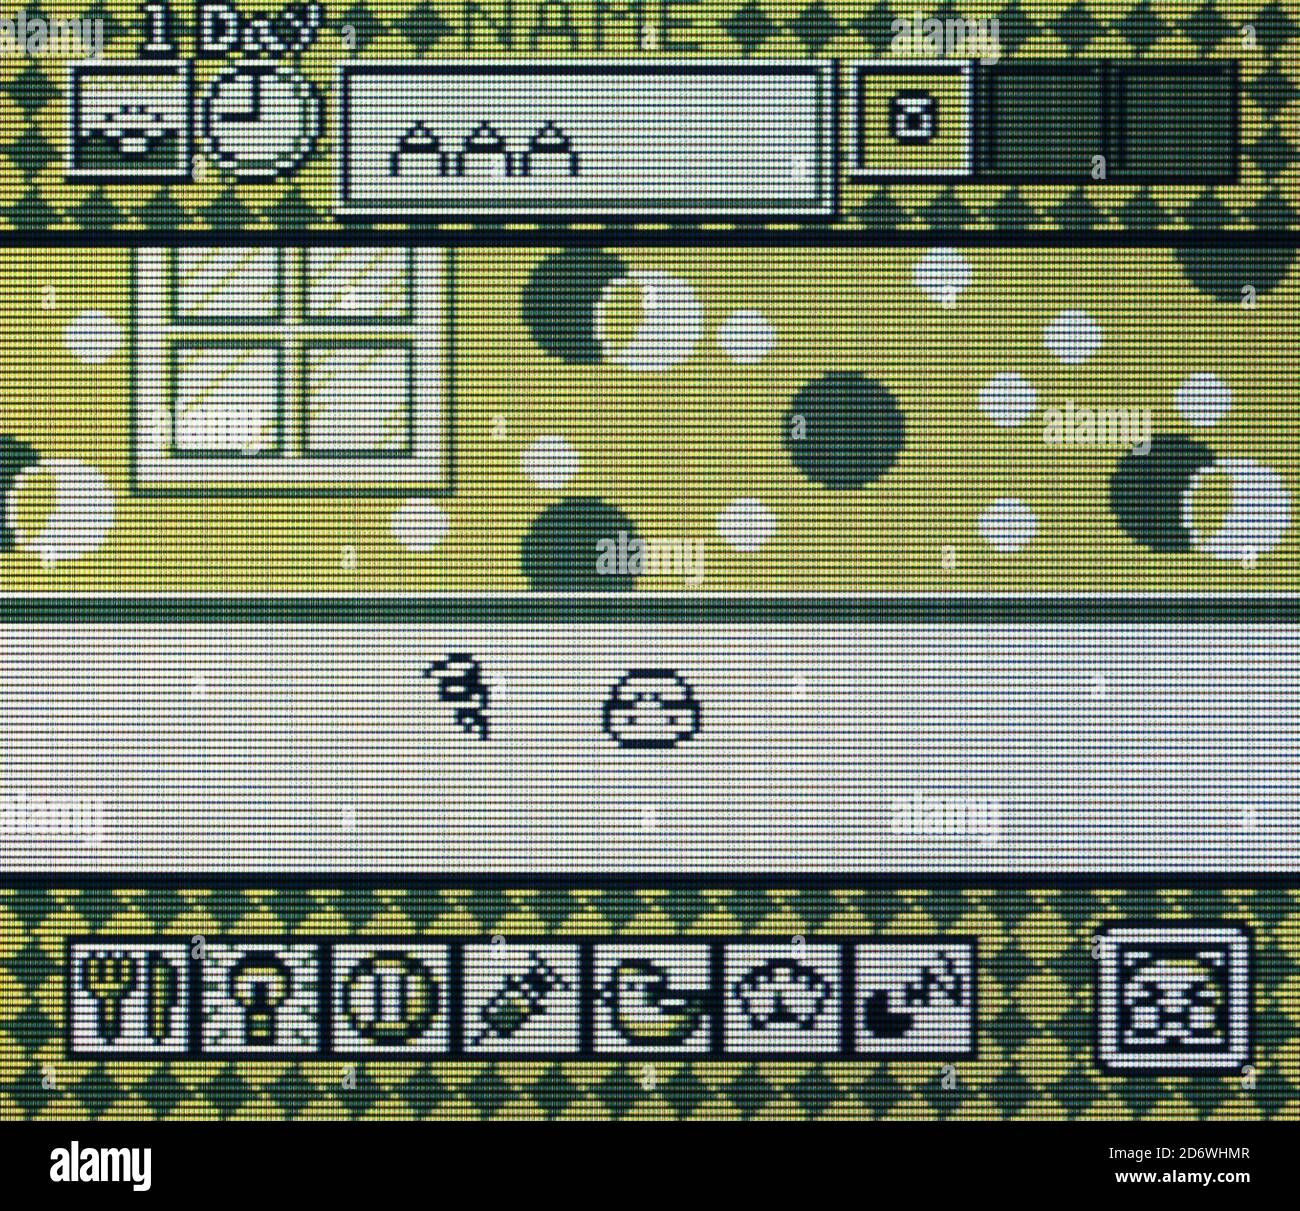 Tamagotchi - Nintendo Gameboy Videogame - sólo para uso editorial  Fotografía de stock - Alamy